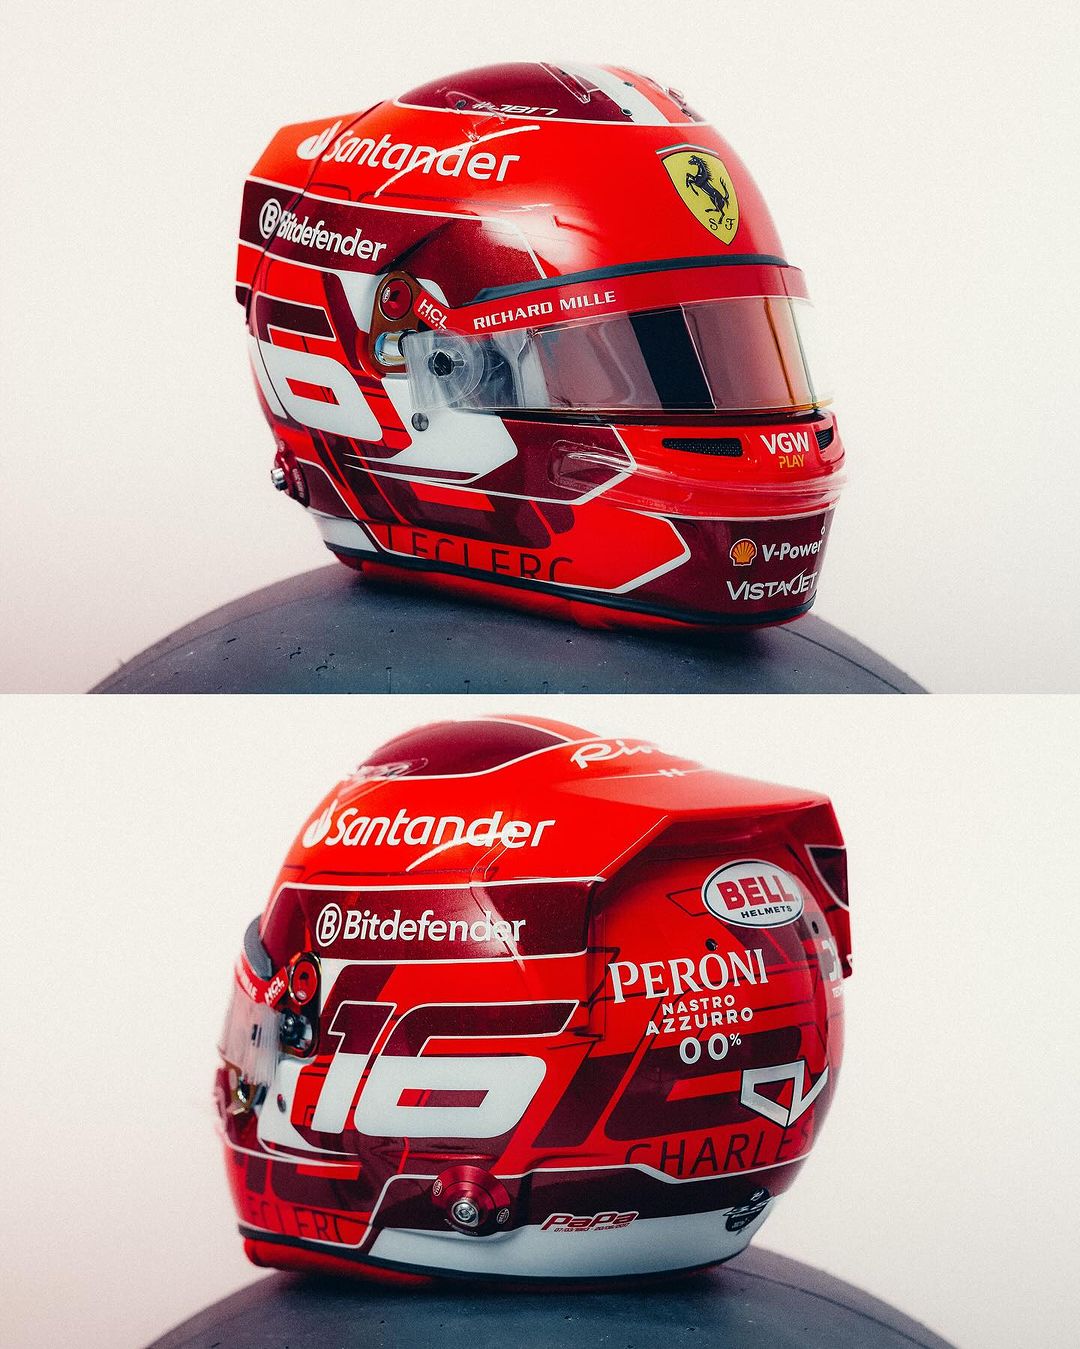 Charles Leclerc's new Ferrari helmet for 2024 F1 season